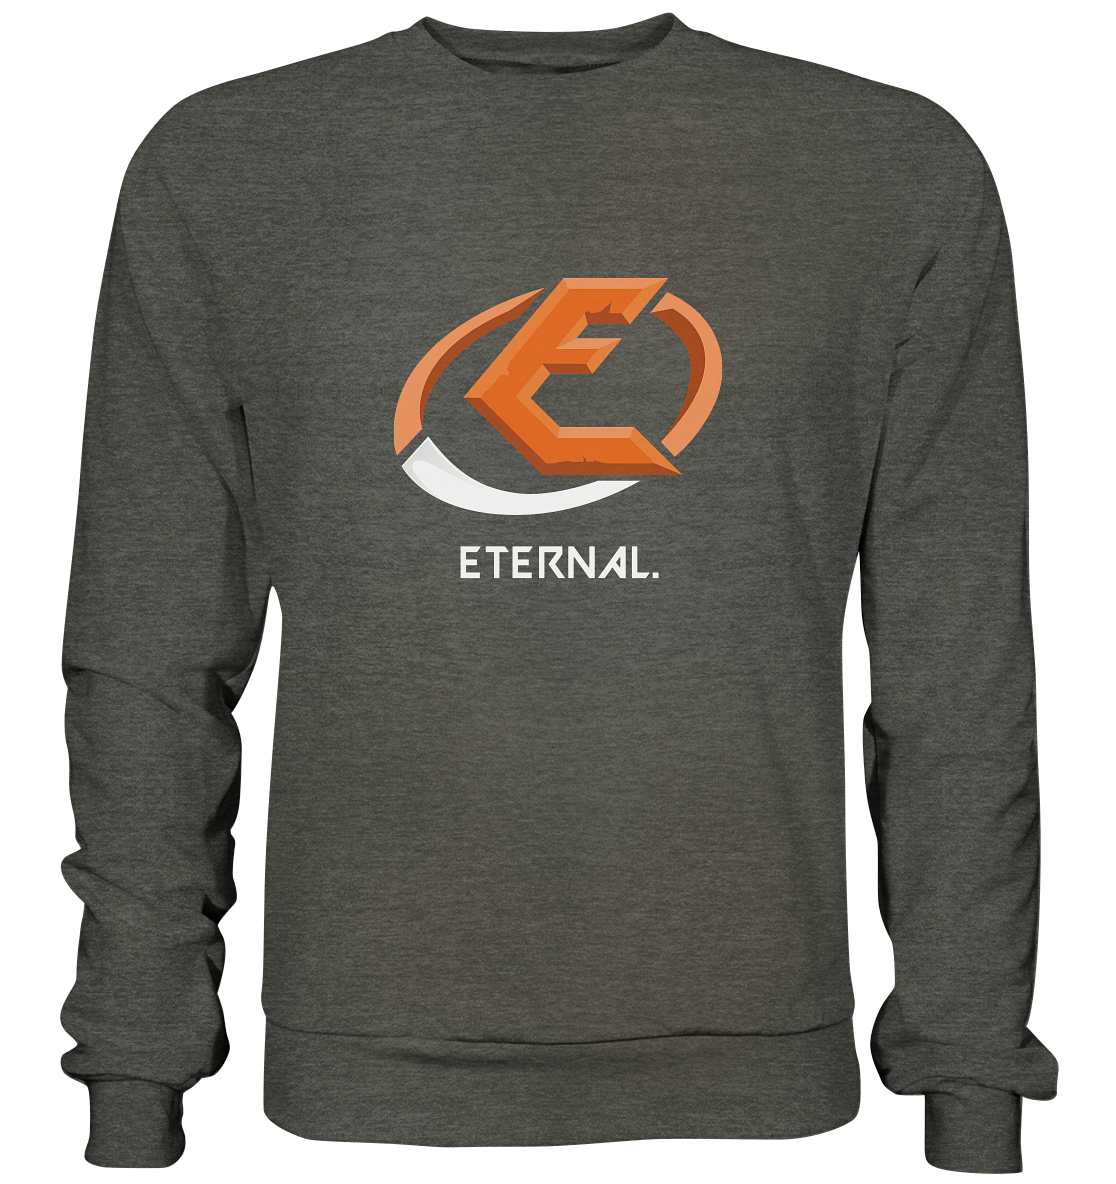 ETERNAL GAMING - Basic Sweatshirt